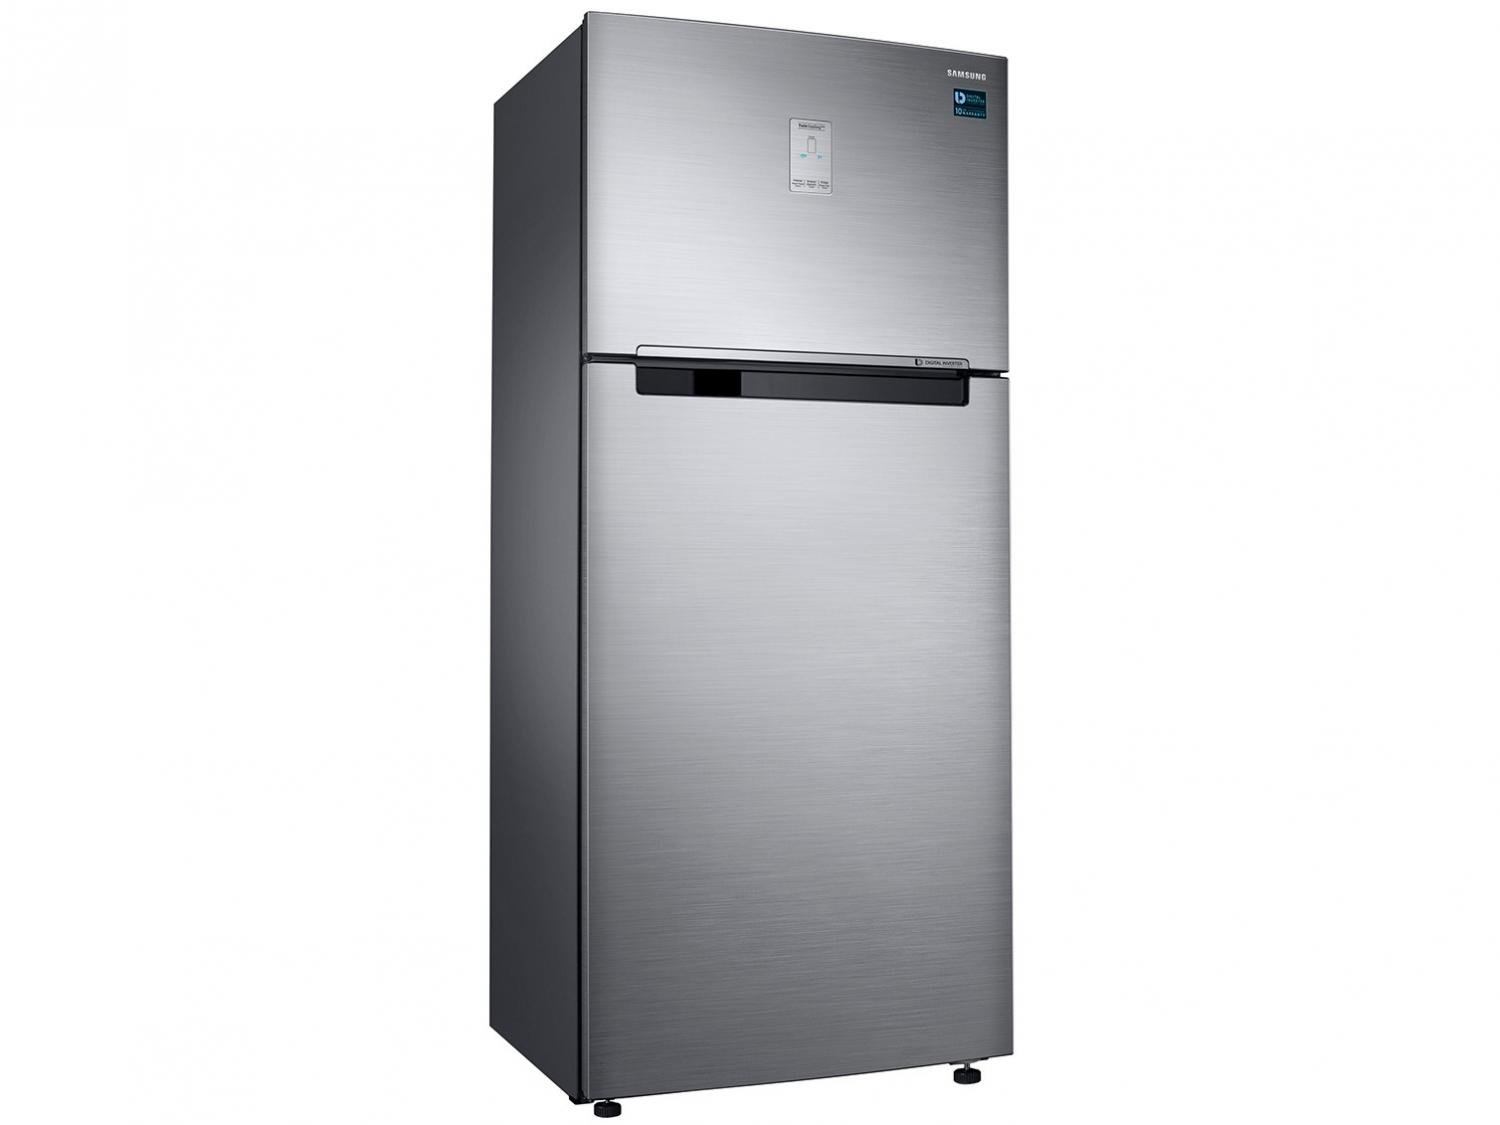 Geladeira/Refrigerador Samsung Automático - Inox Duplex 528L RT53K6240S8/AZ - 110 V